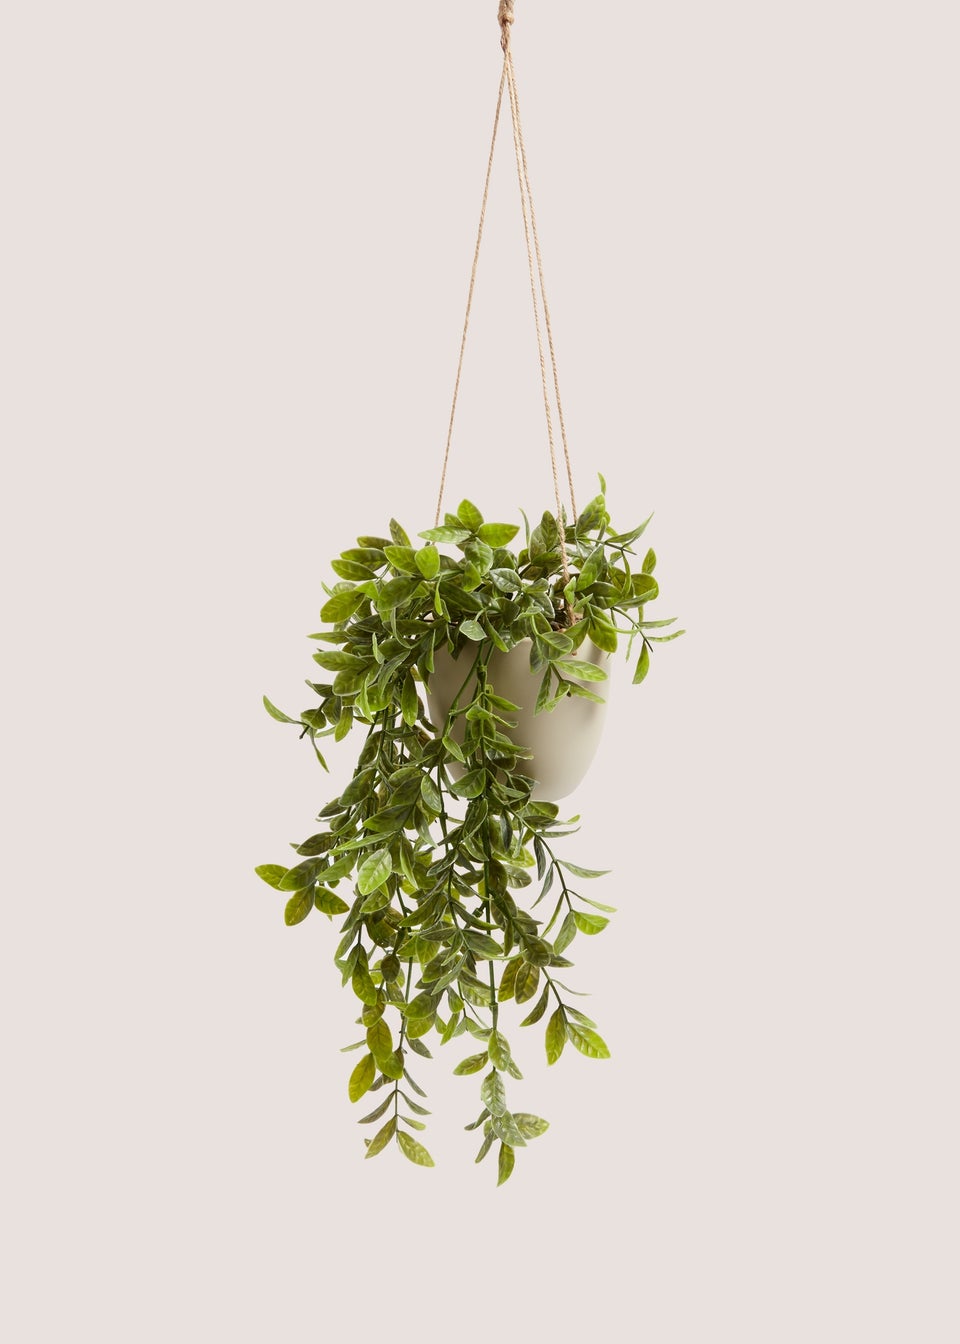 Hanging Plastic Plant Pot (17cm x 13cm x 13cm)